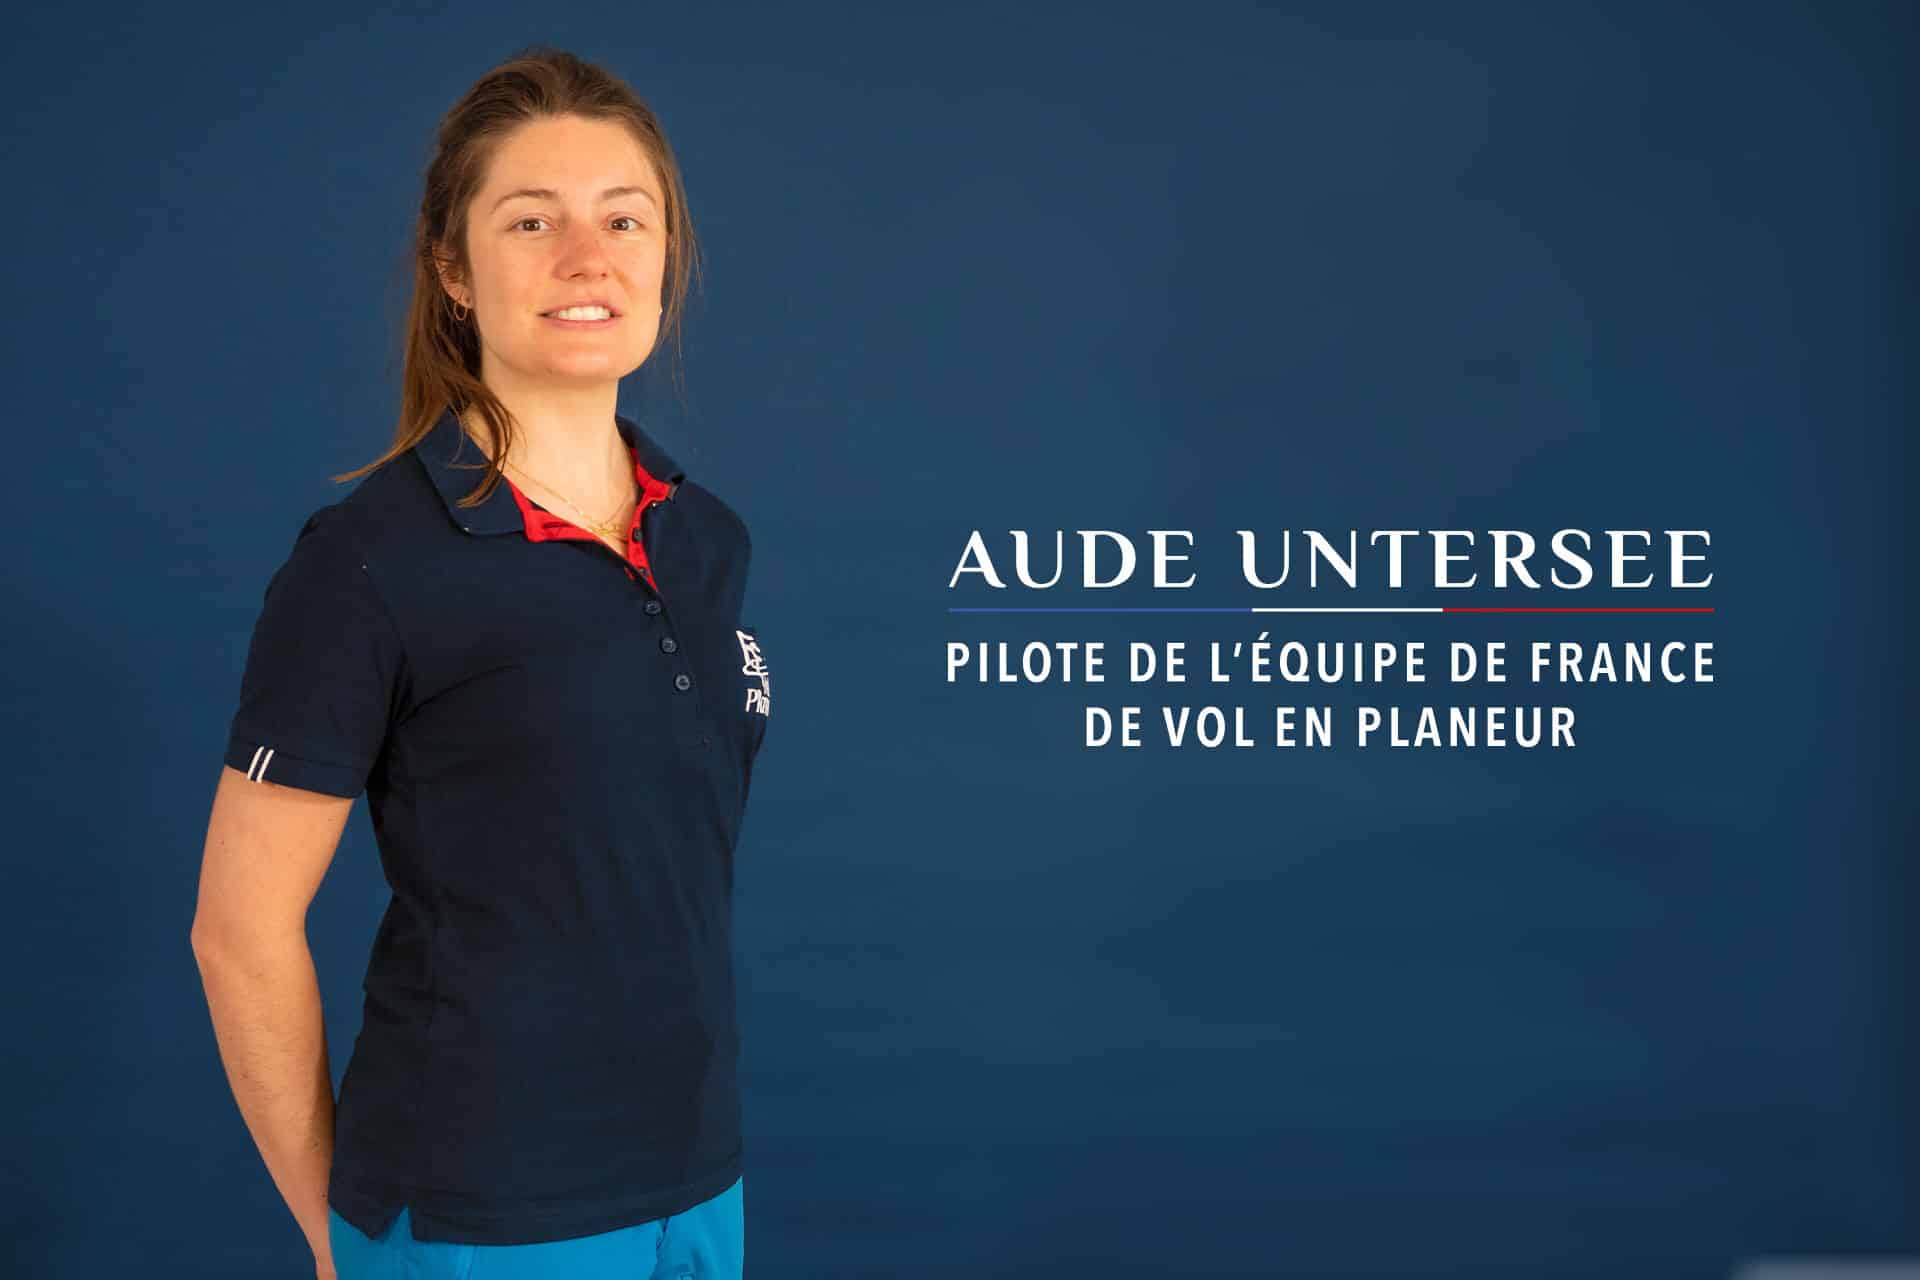 Aude Untersee remplace Enguerrand Virol aux championnats d’Europe